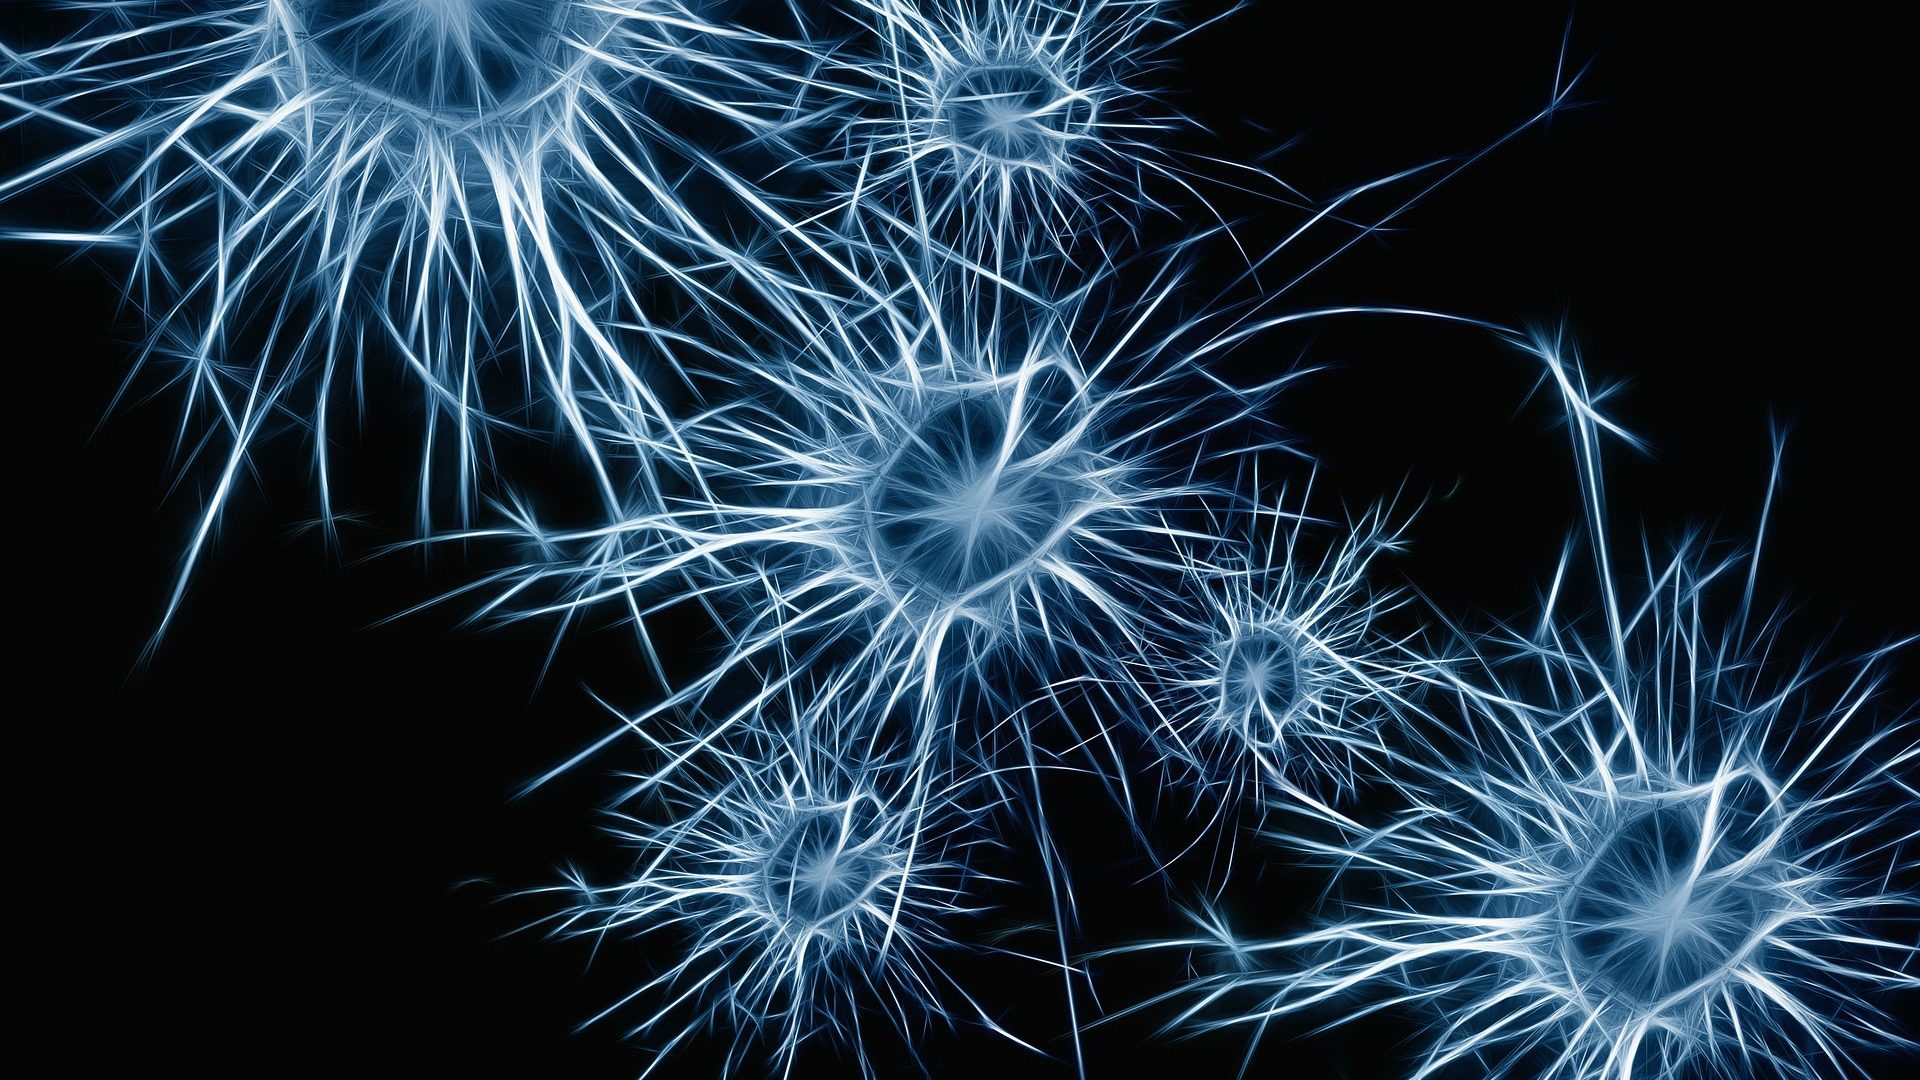 Jaime Maldonado-Aviles est émerveillé par la complexité des systèmes neuronaux (Image:Pixabay.com)